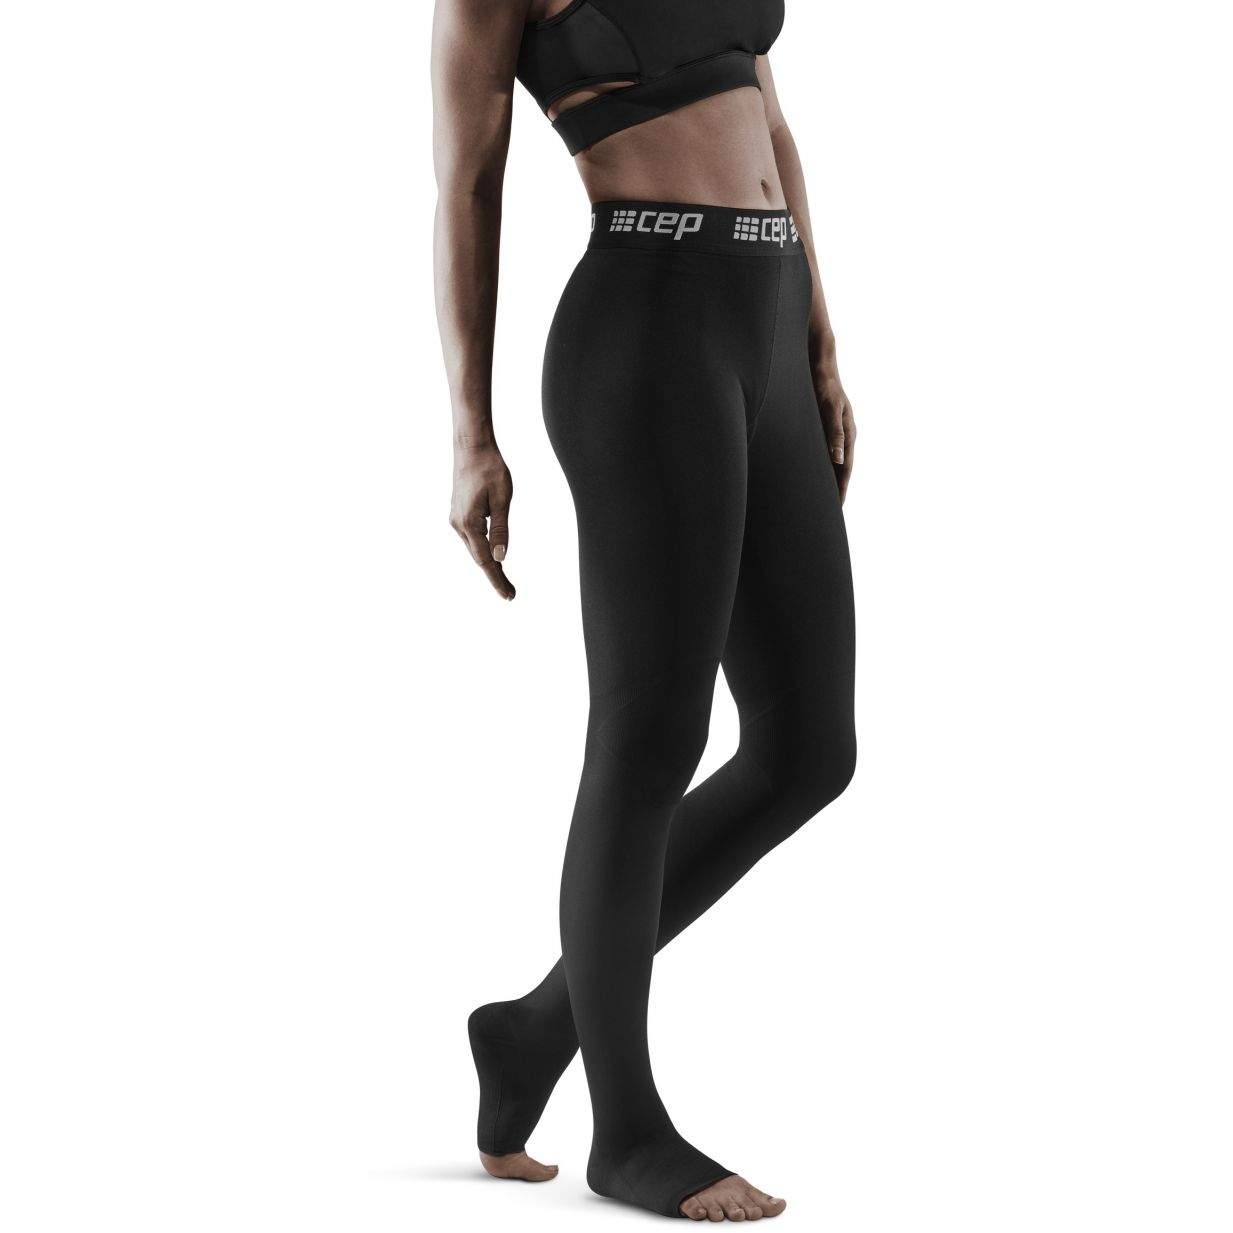 Productfoto van CEP Recovery Pro Legging Dames - zwart